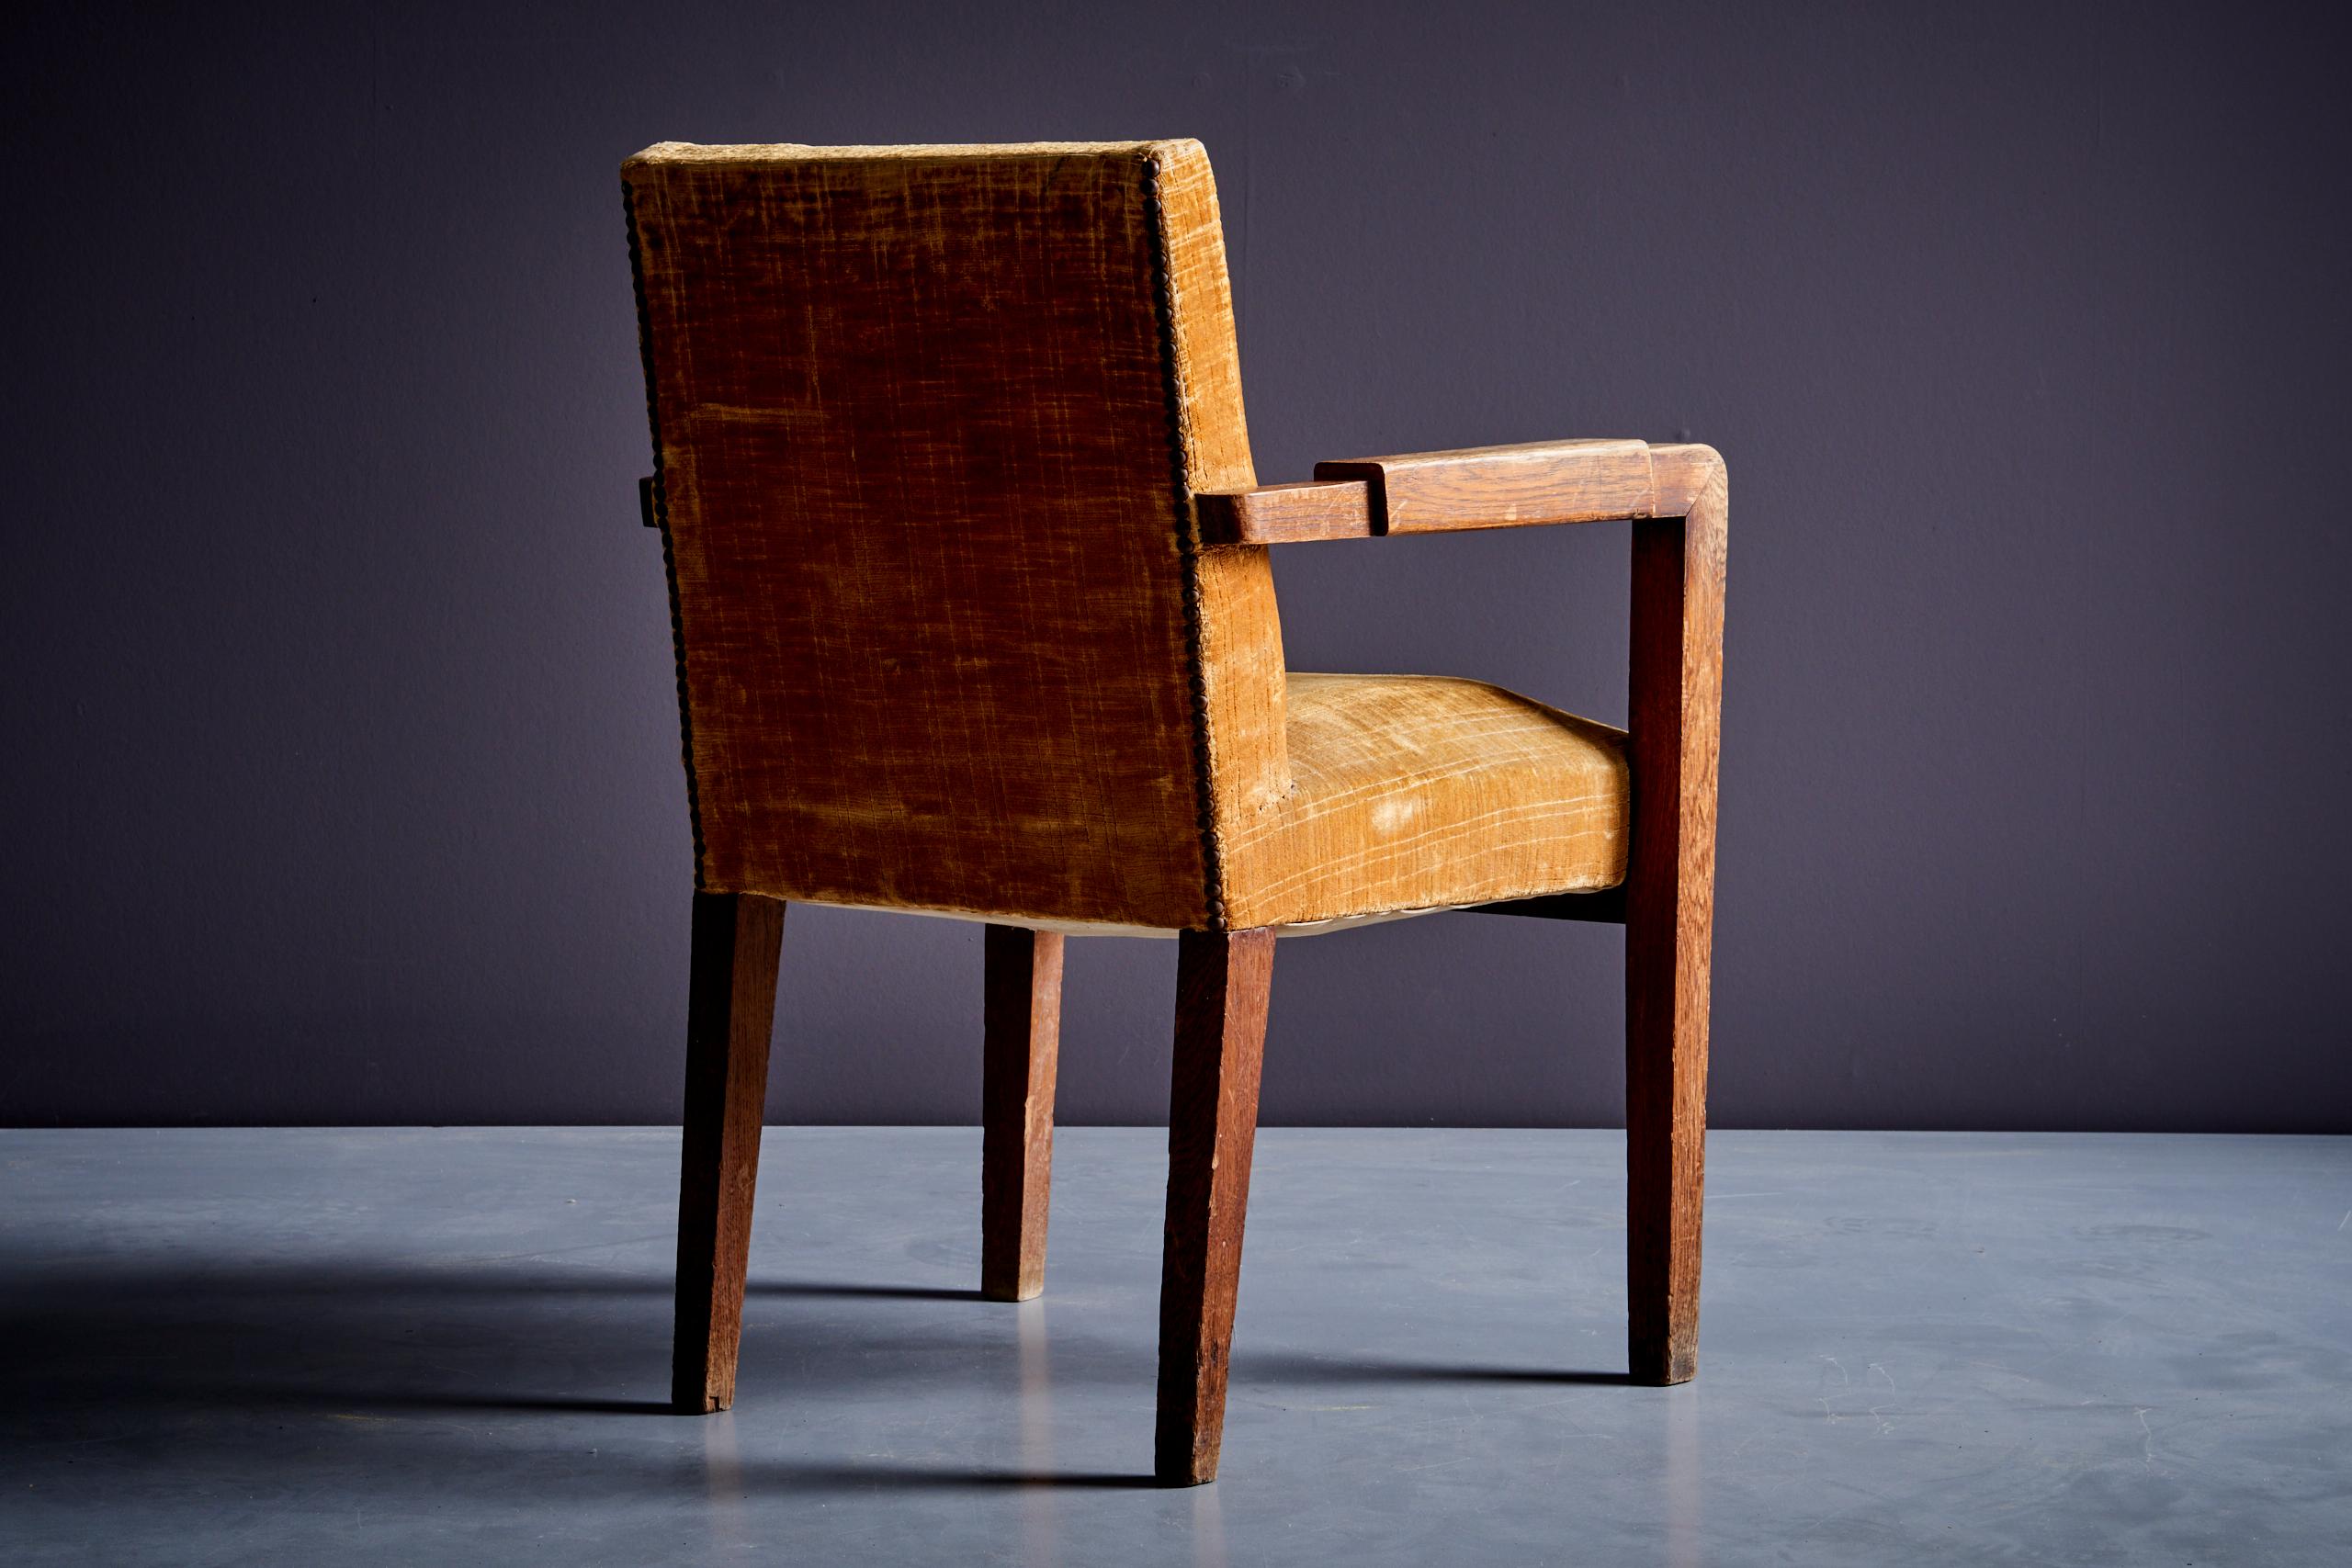 Art déco-Sessel aus Eiche und mustardfarbener Polsterung, Frankreich - 1940er Jahre (Stoff)